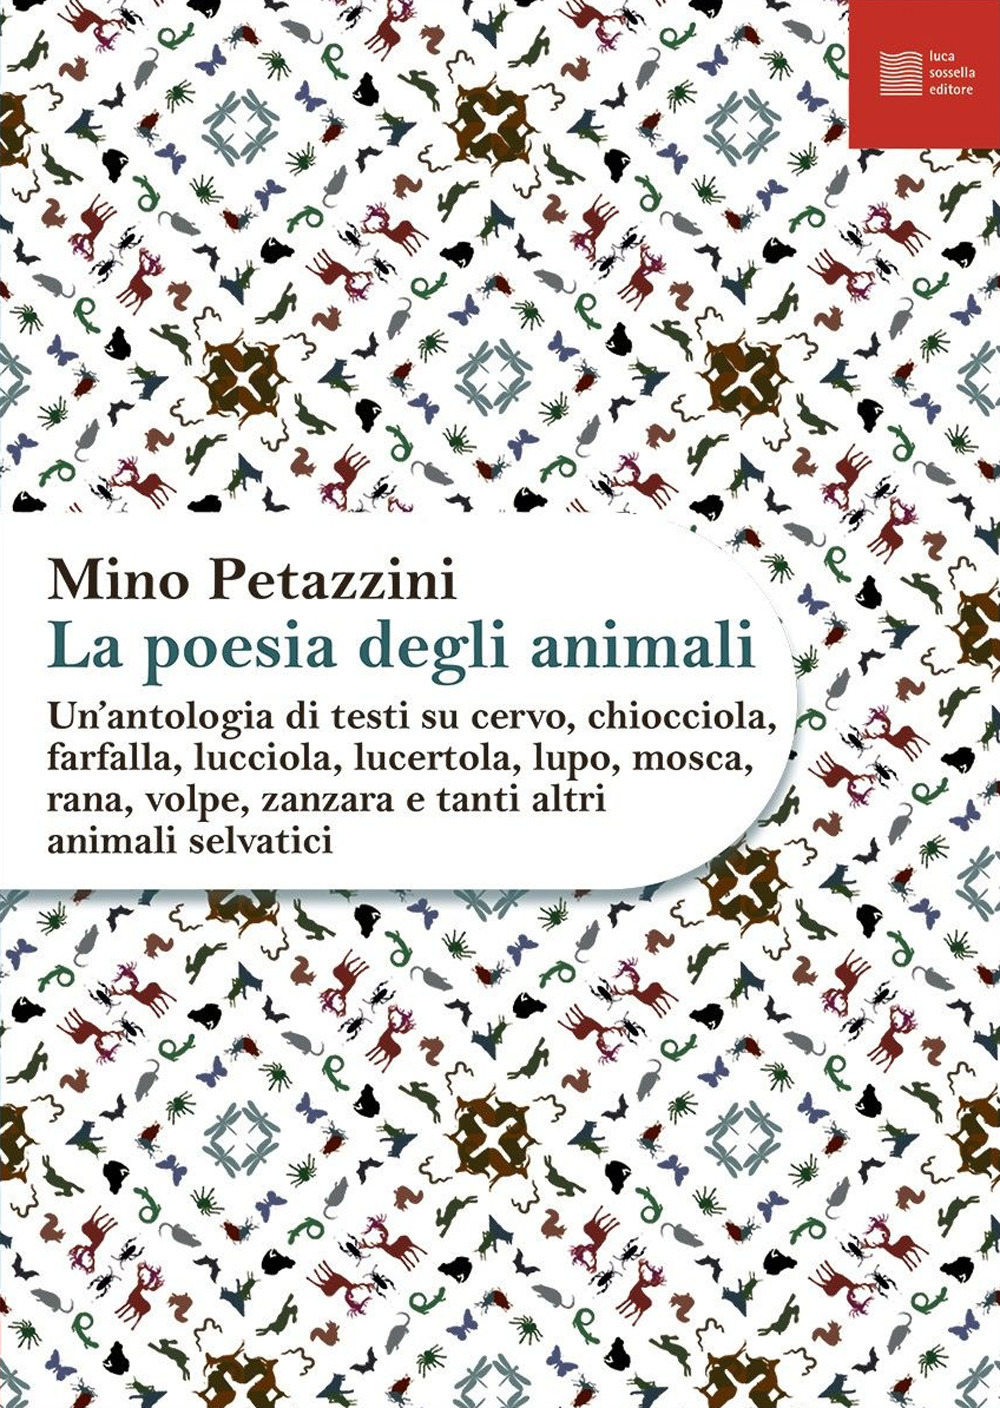 La poesia degli animali. Vol. 2: Un' antologia di testi su cervo, chiocciola, farfalla, lucciola, lucertola, lupo, mosca, rana, volpe, zanzara e tanti altri animali selvatici